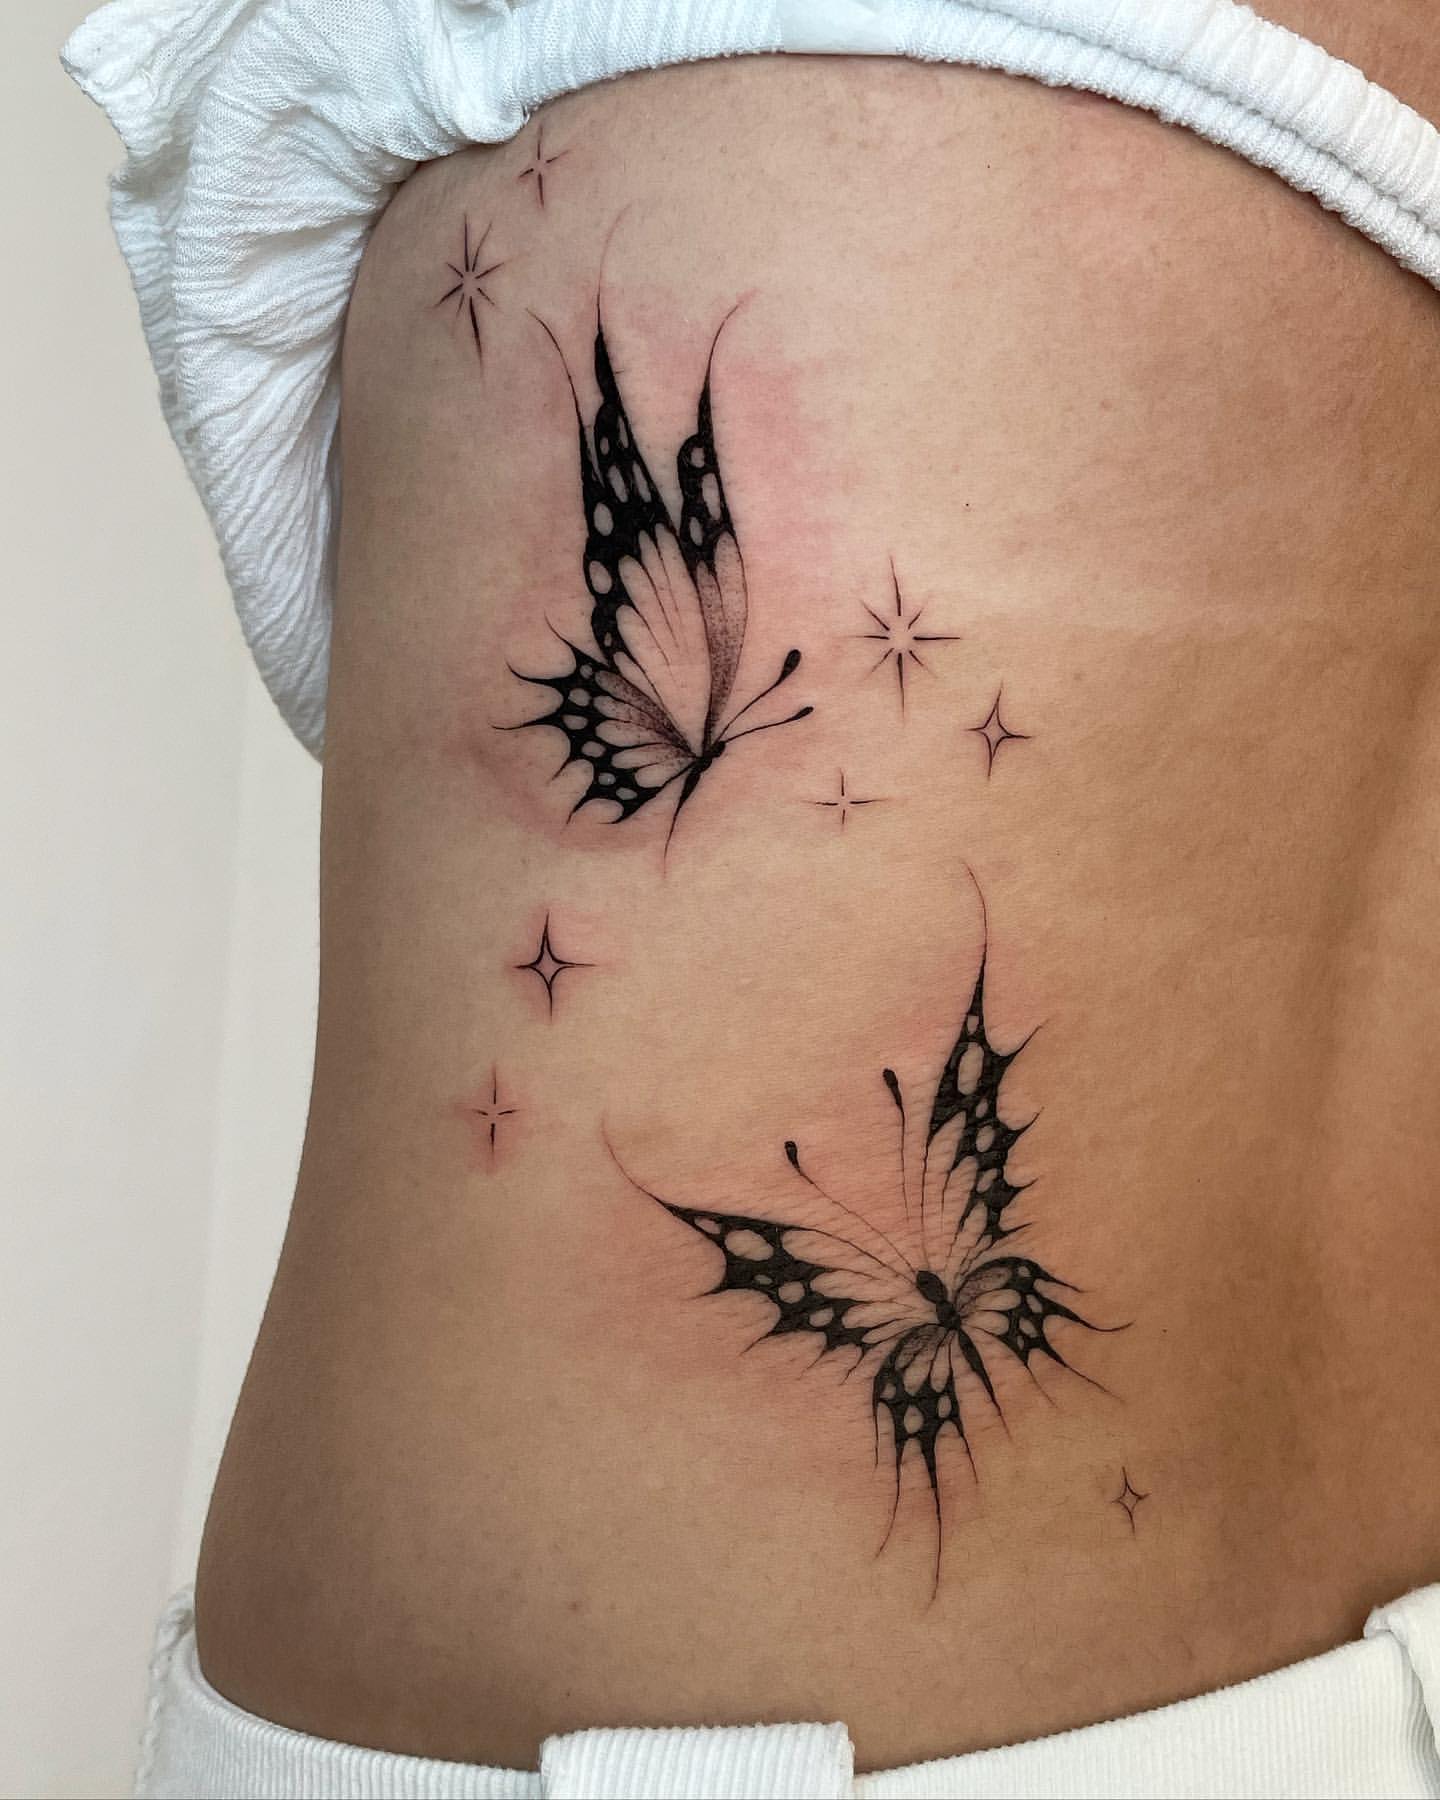 Tattoo Ideas For Women, star tattoo